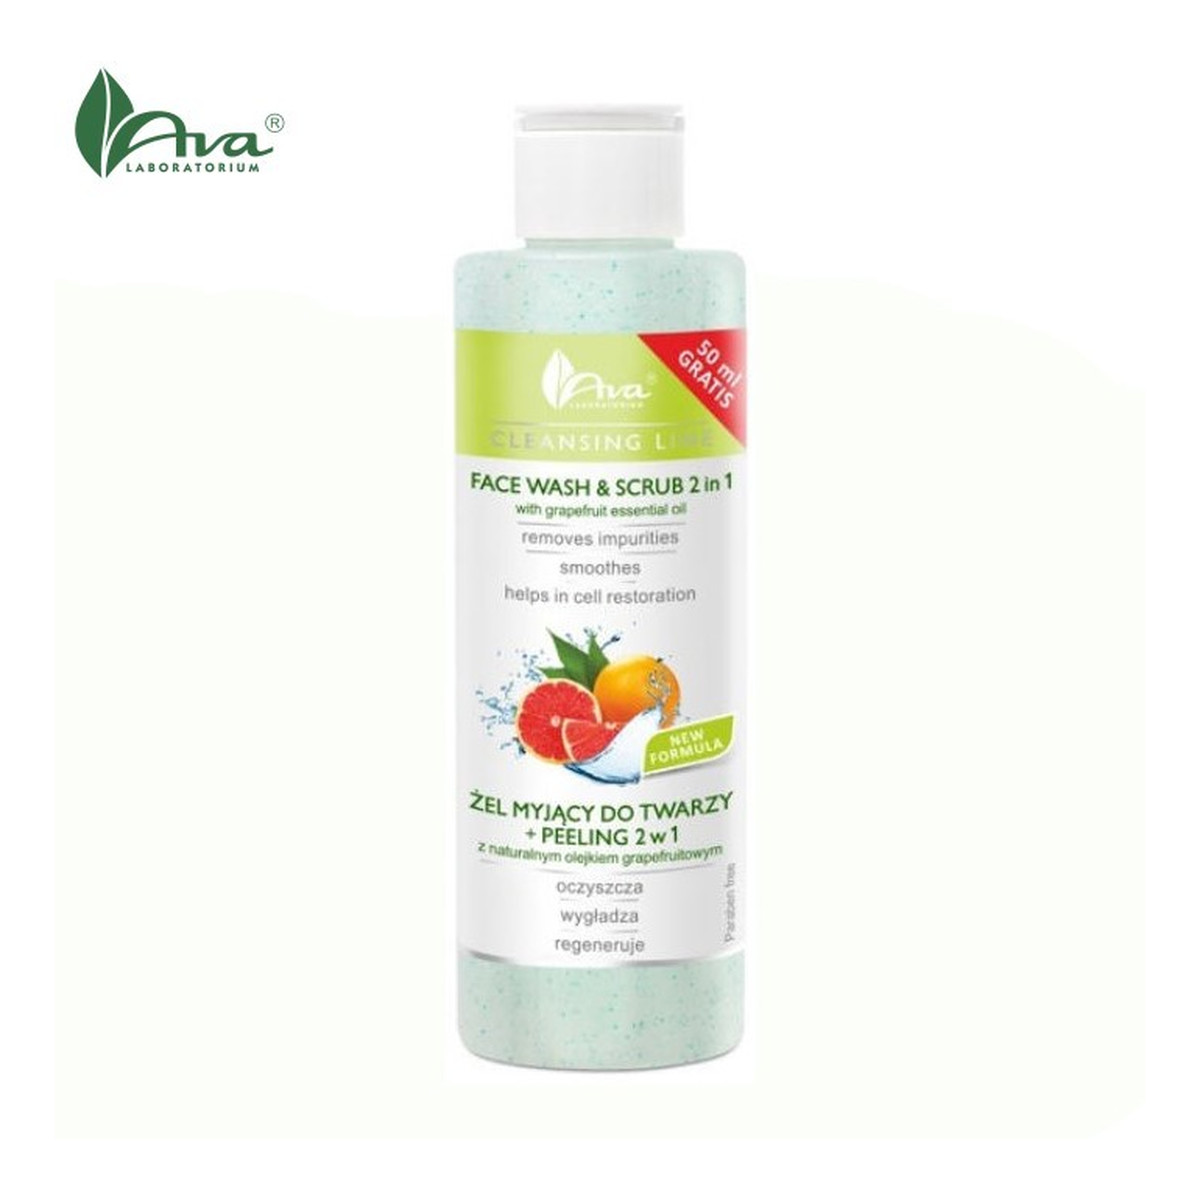 Ava Laboratorium Żel myjący do twarzy + peeling 2w1 z naturalnym olejkiem grapefruitowym 200ml